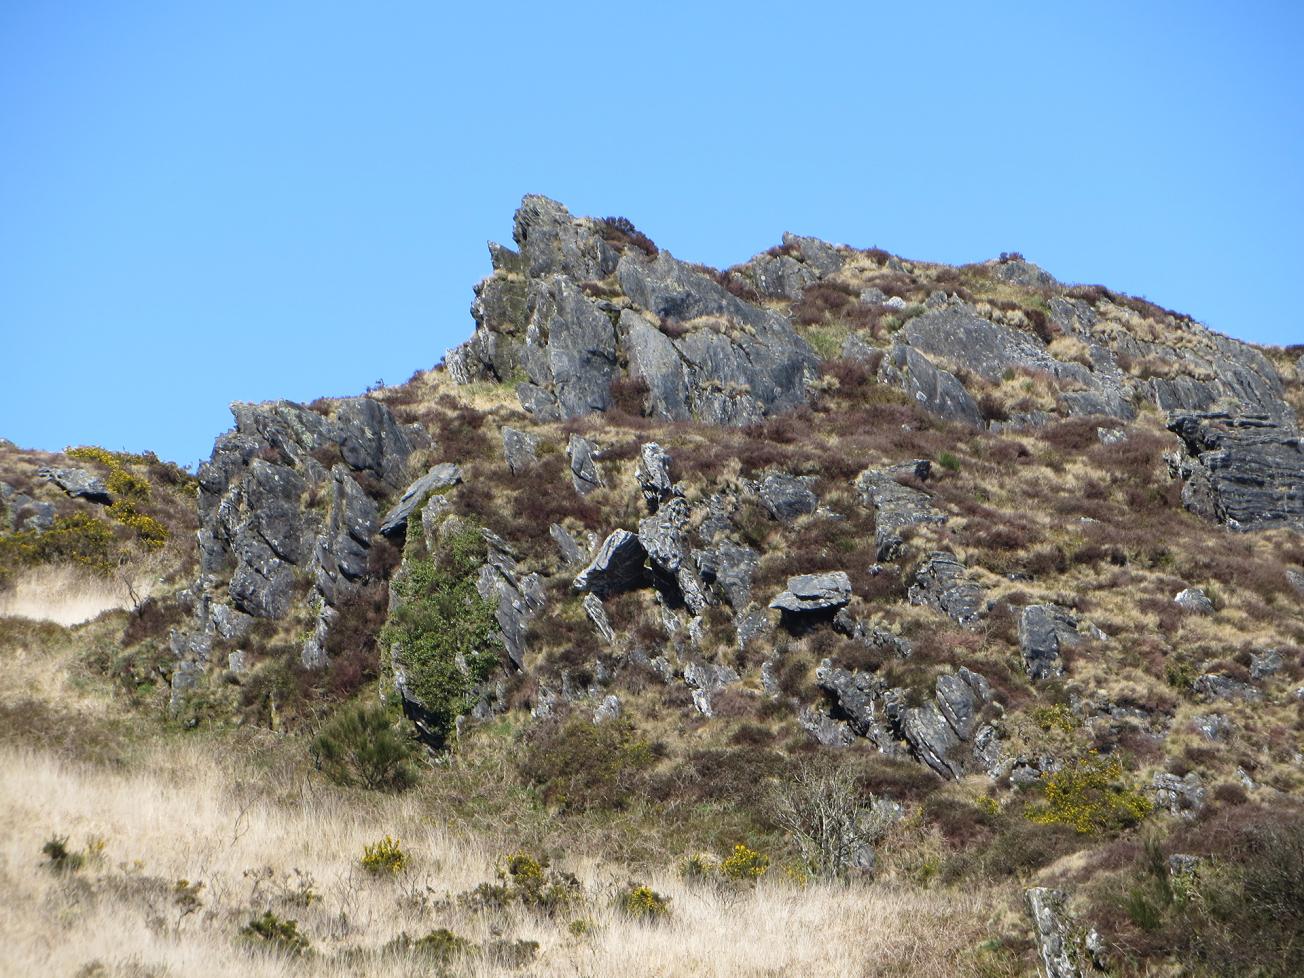 Schistes et quartzites déchiquetés par l’érosion forment les plus hauts sommets des Monts d’Arrée